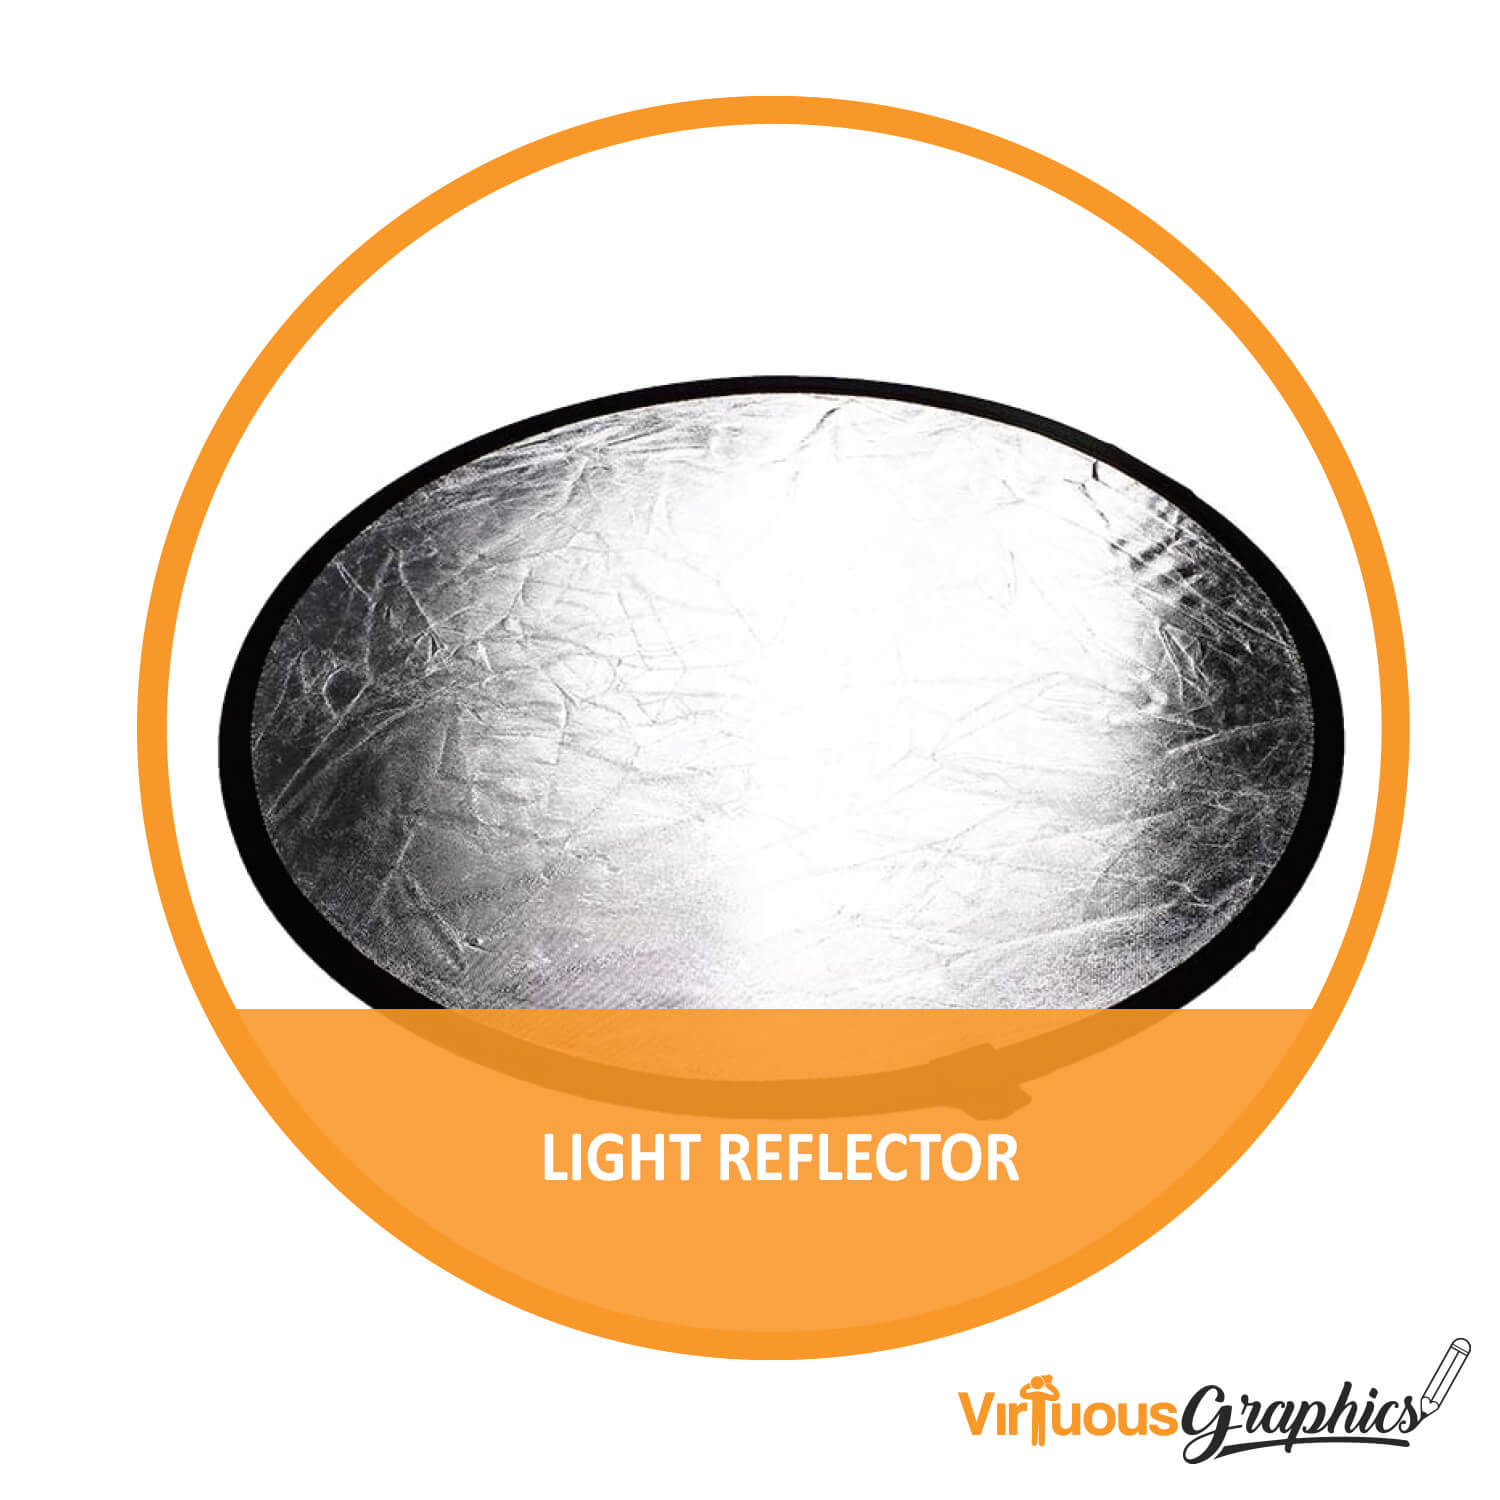 Light reflector.jpg